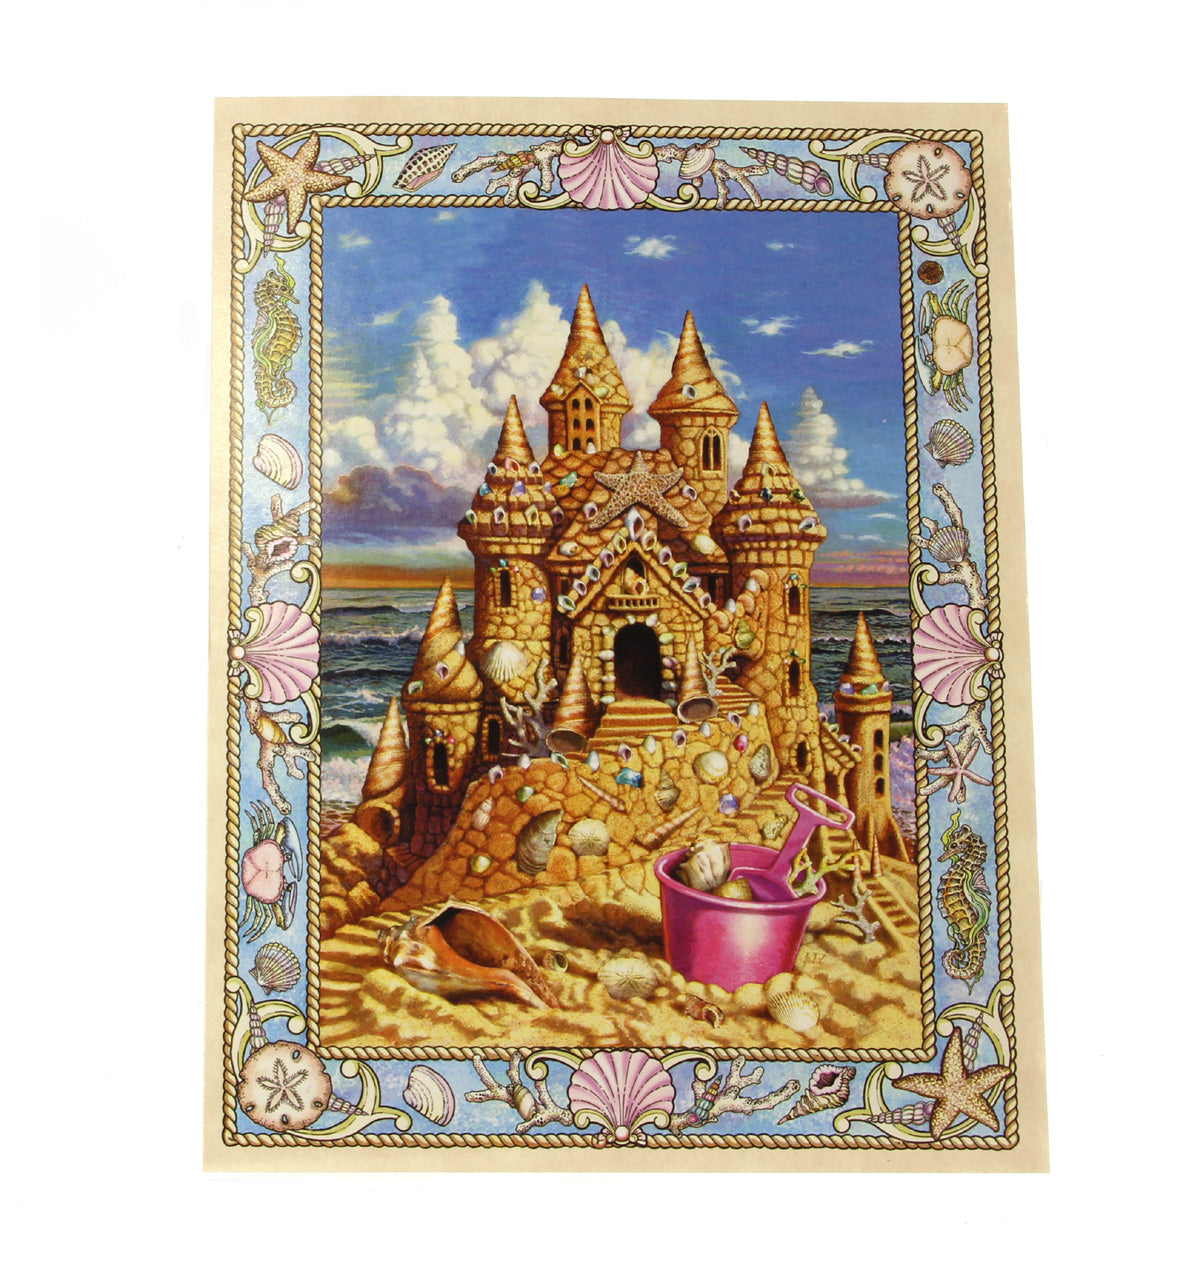 Birthday Card: Sand castle